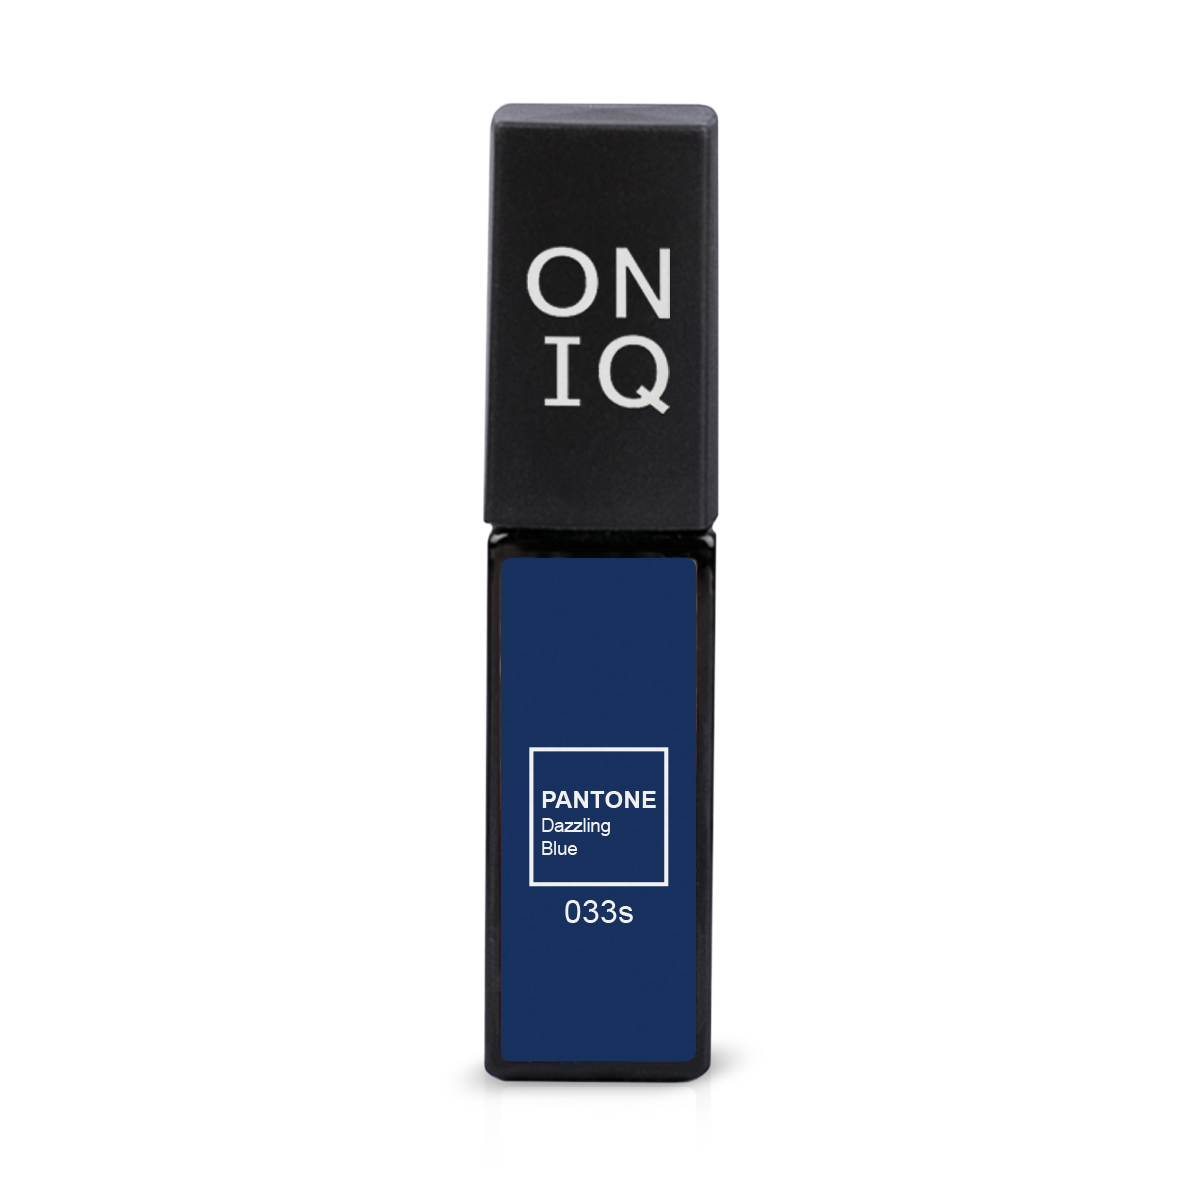 ONIQ Гель-лак для покрытия ногтей, Pantone: Dazzling blue, 6